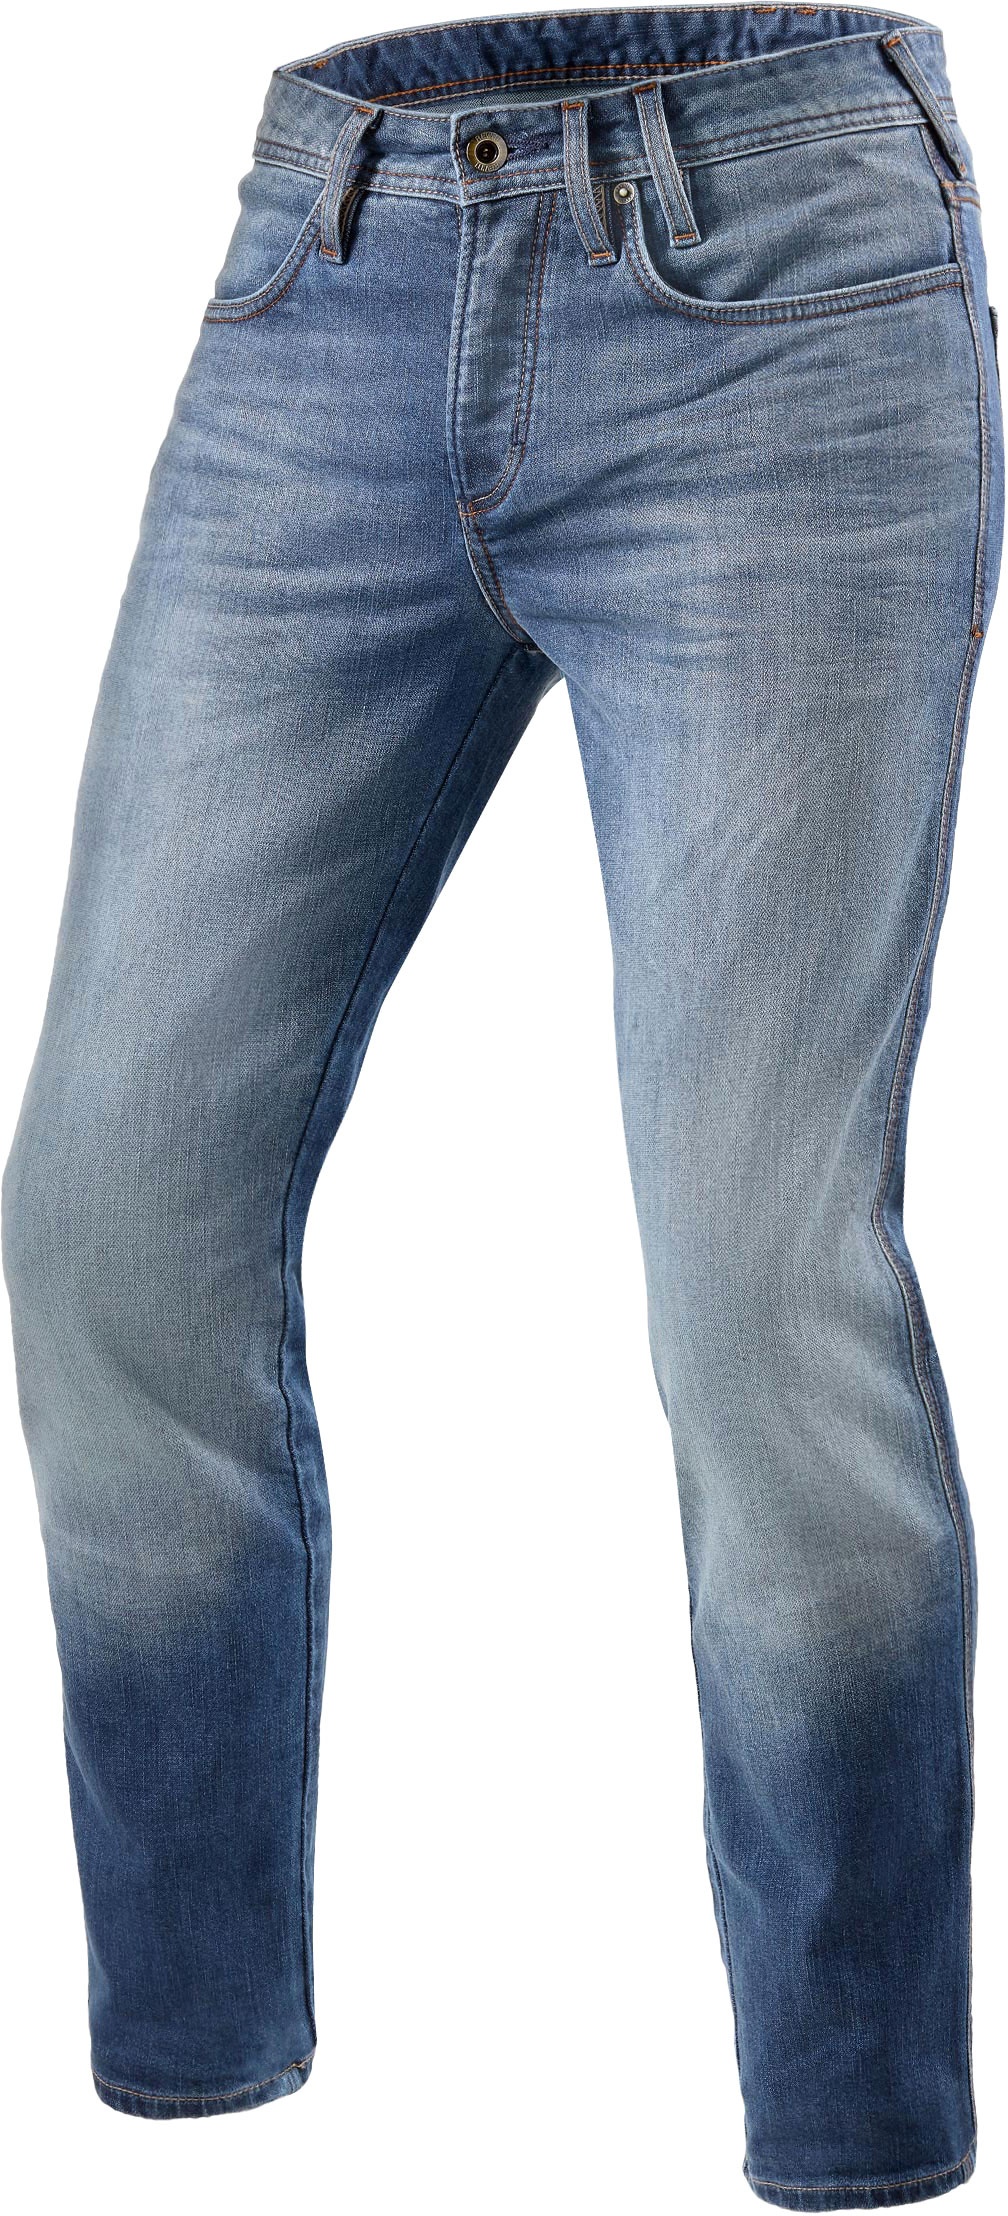 Revit Piston 2, jeans - Bleu - W30/L32